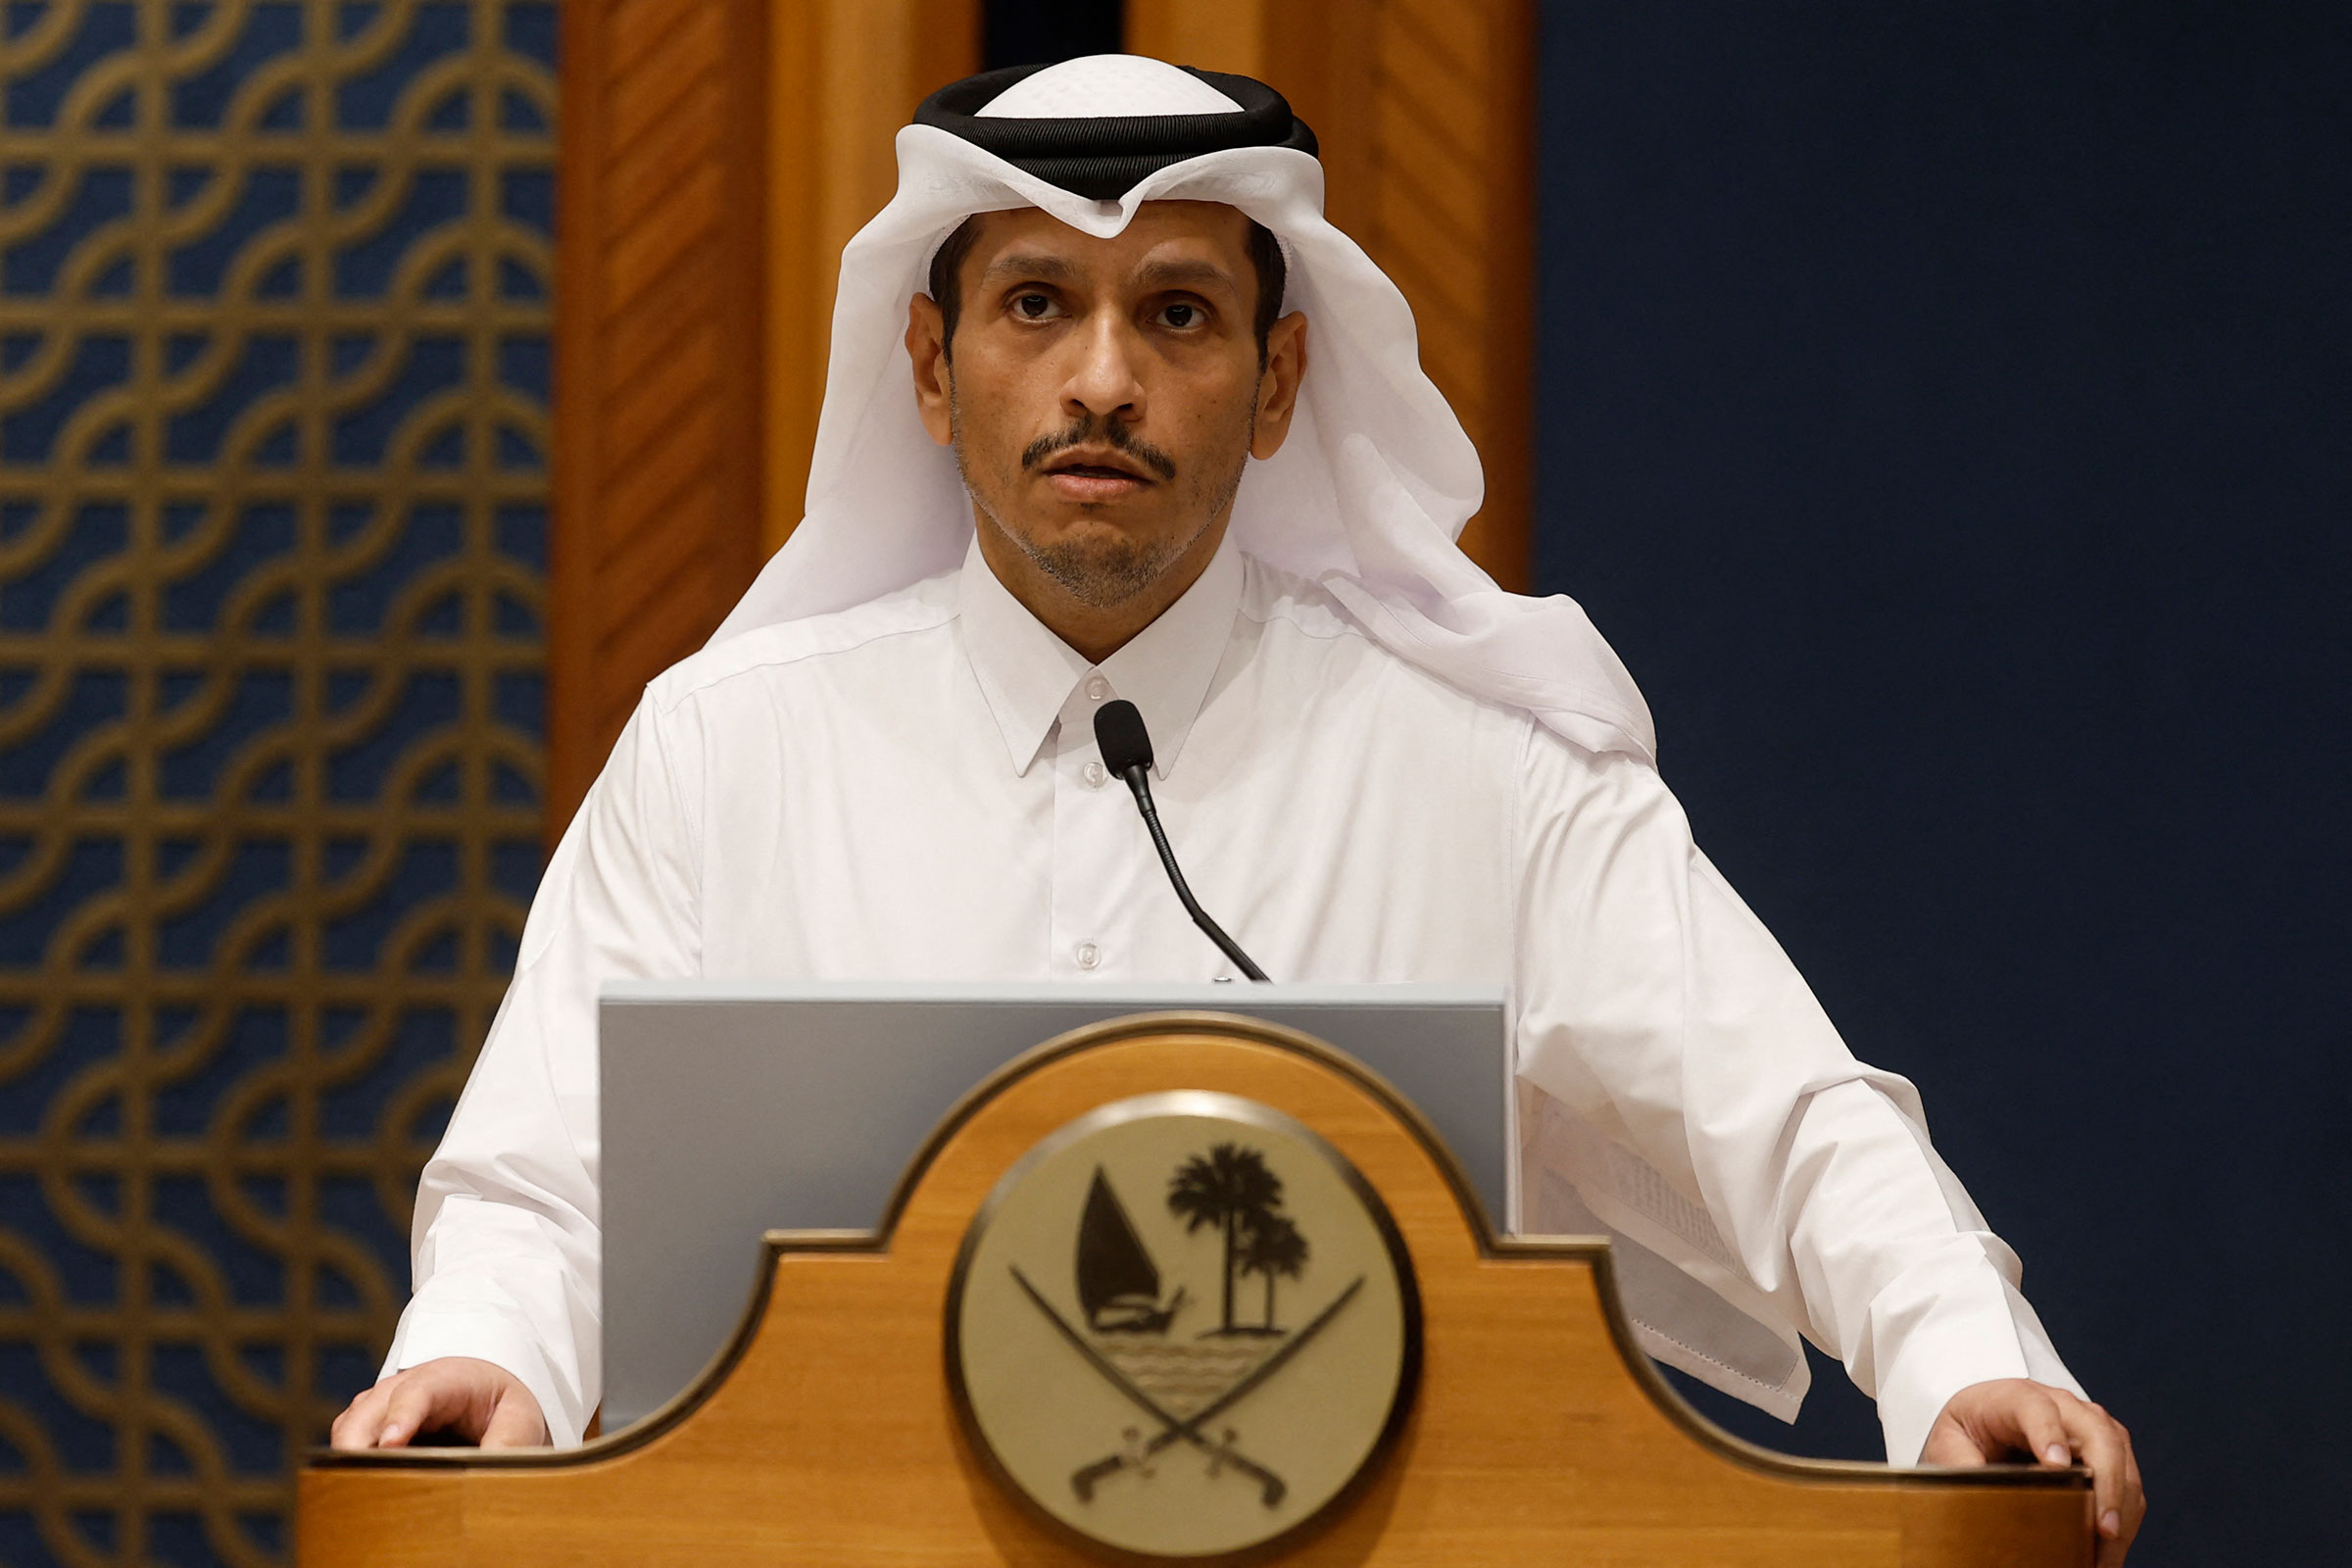 Minister Mohammed bin Abdulrahman bin Jassim al-Thani